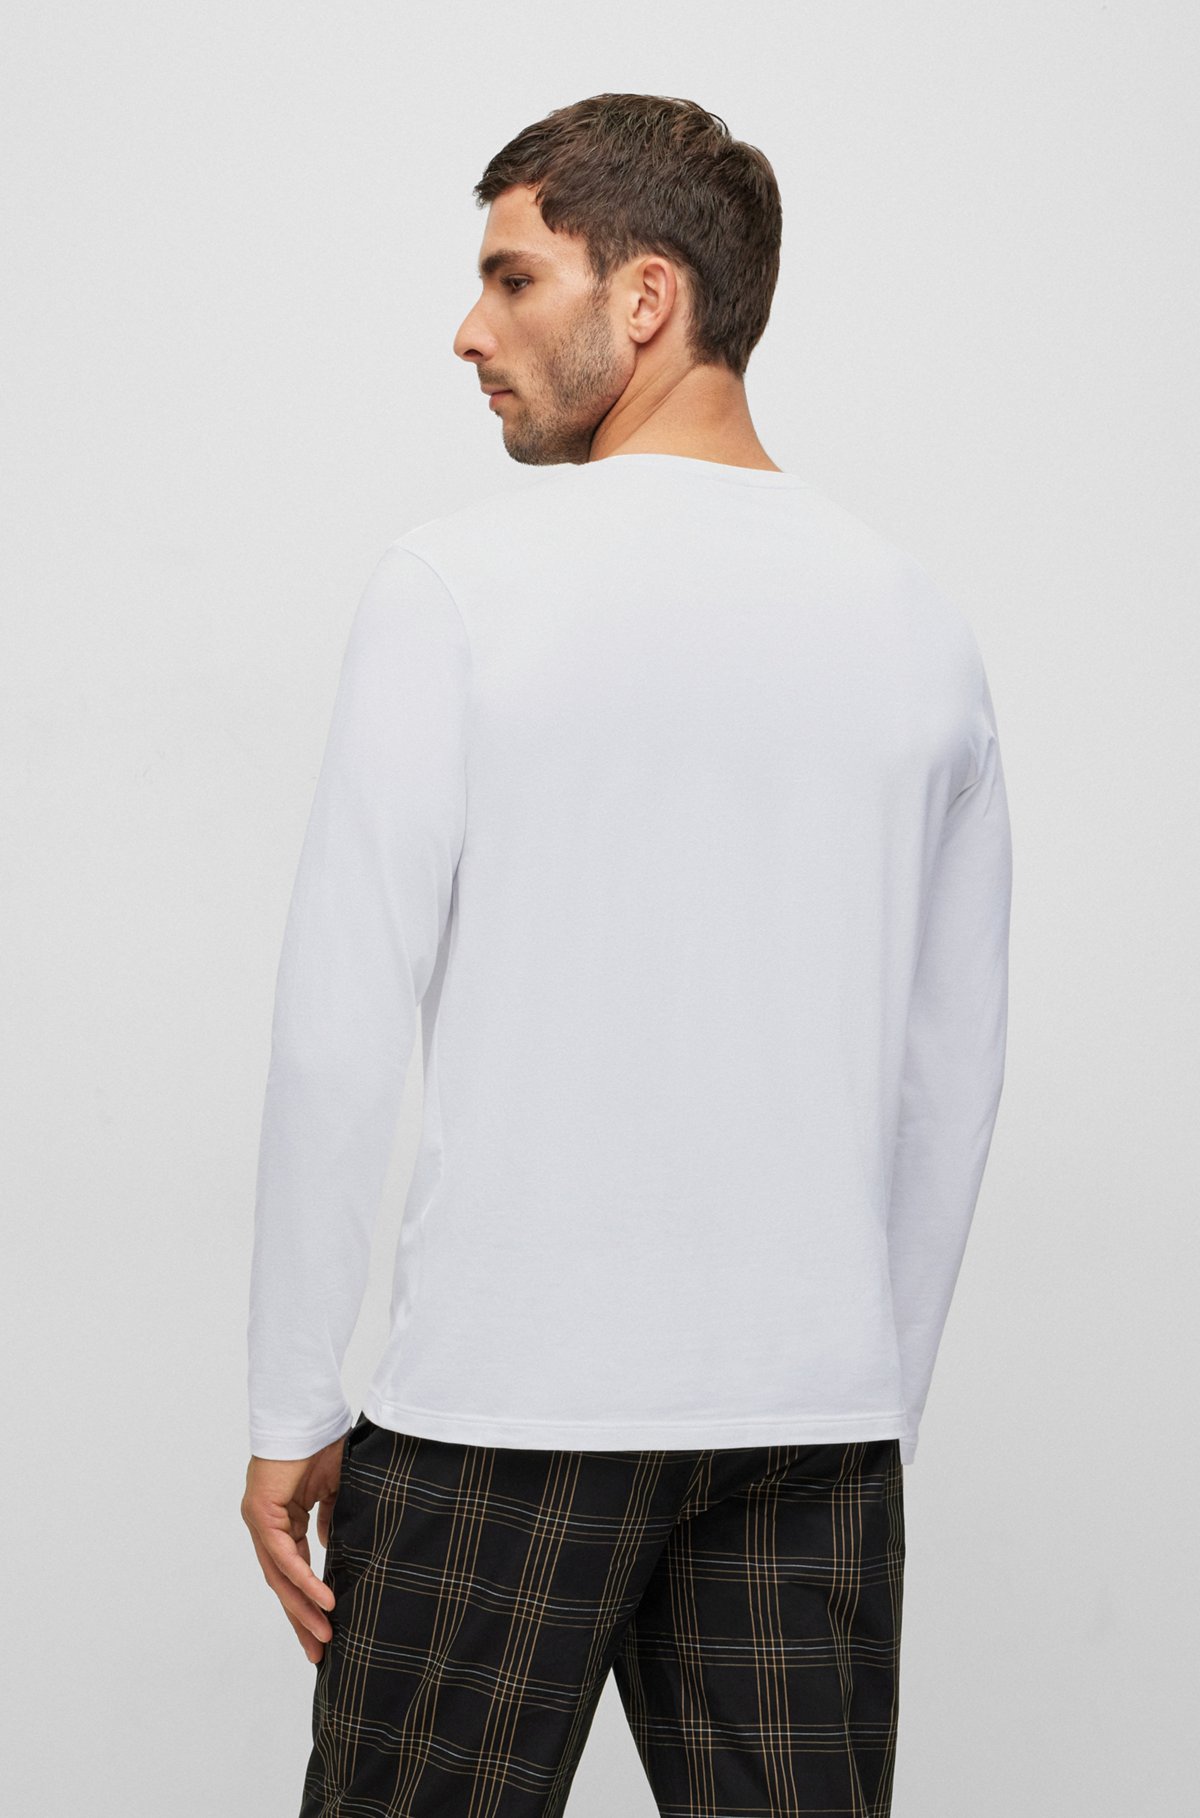 Camiseta regular fit en algodón elástico con logo bordado, Blanco